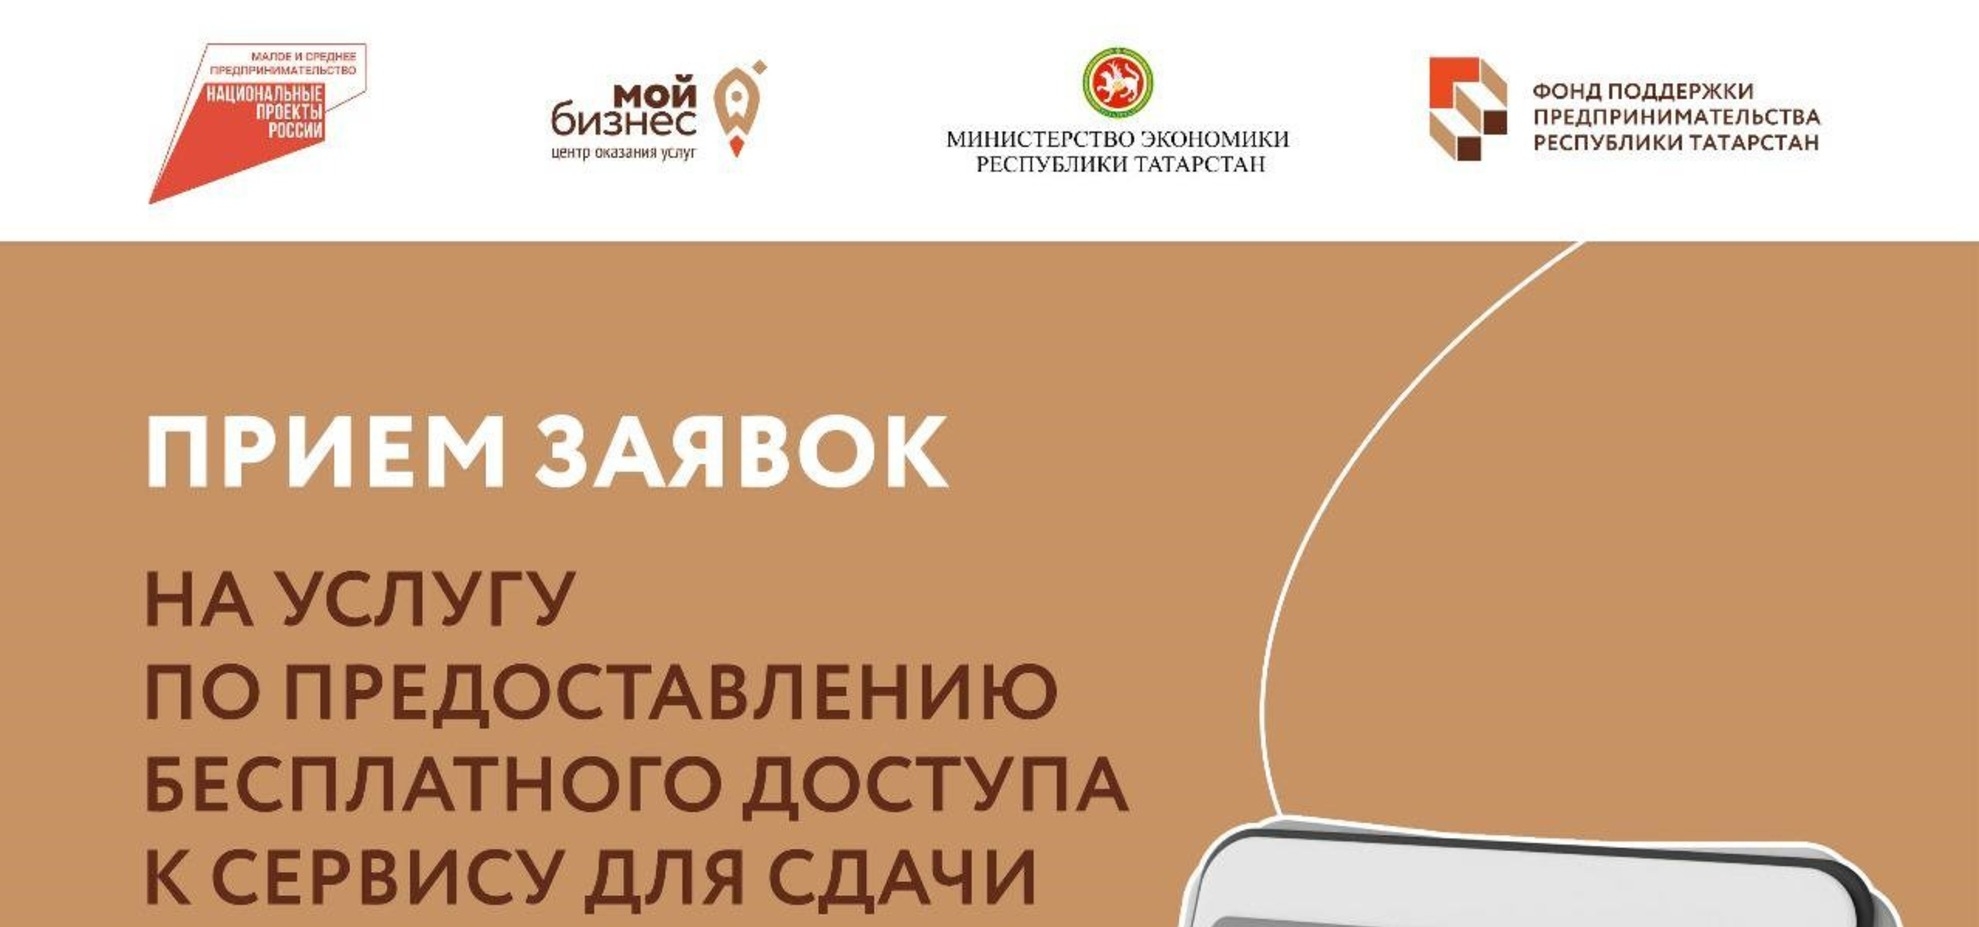 Предприниматели Татарстана могут получить бесплатный доступ к сервису отчетности